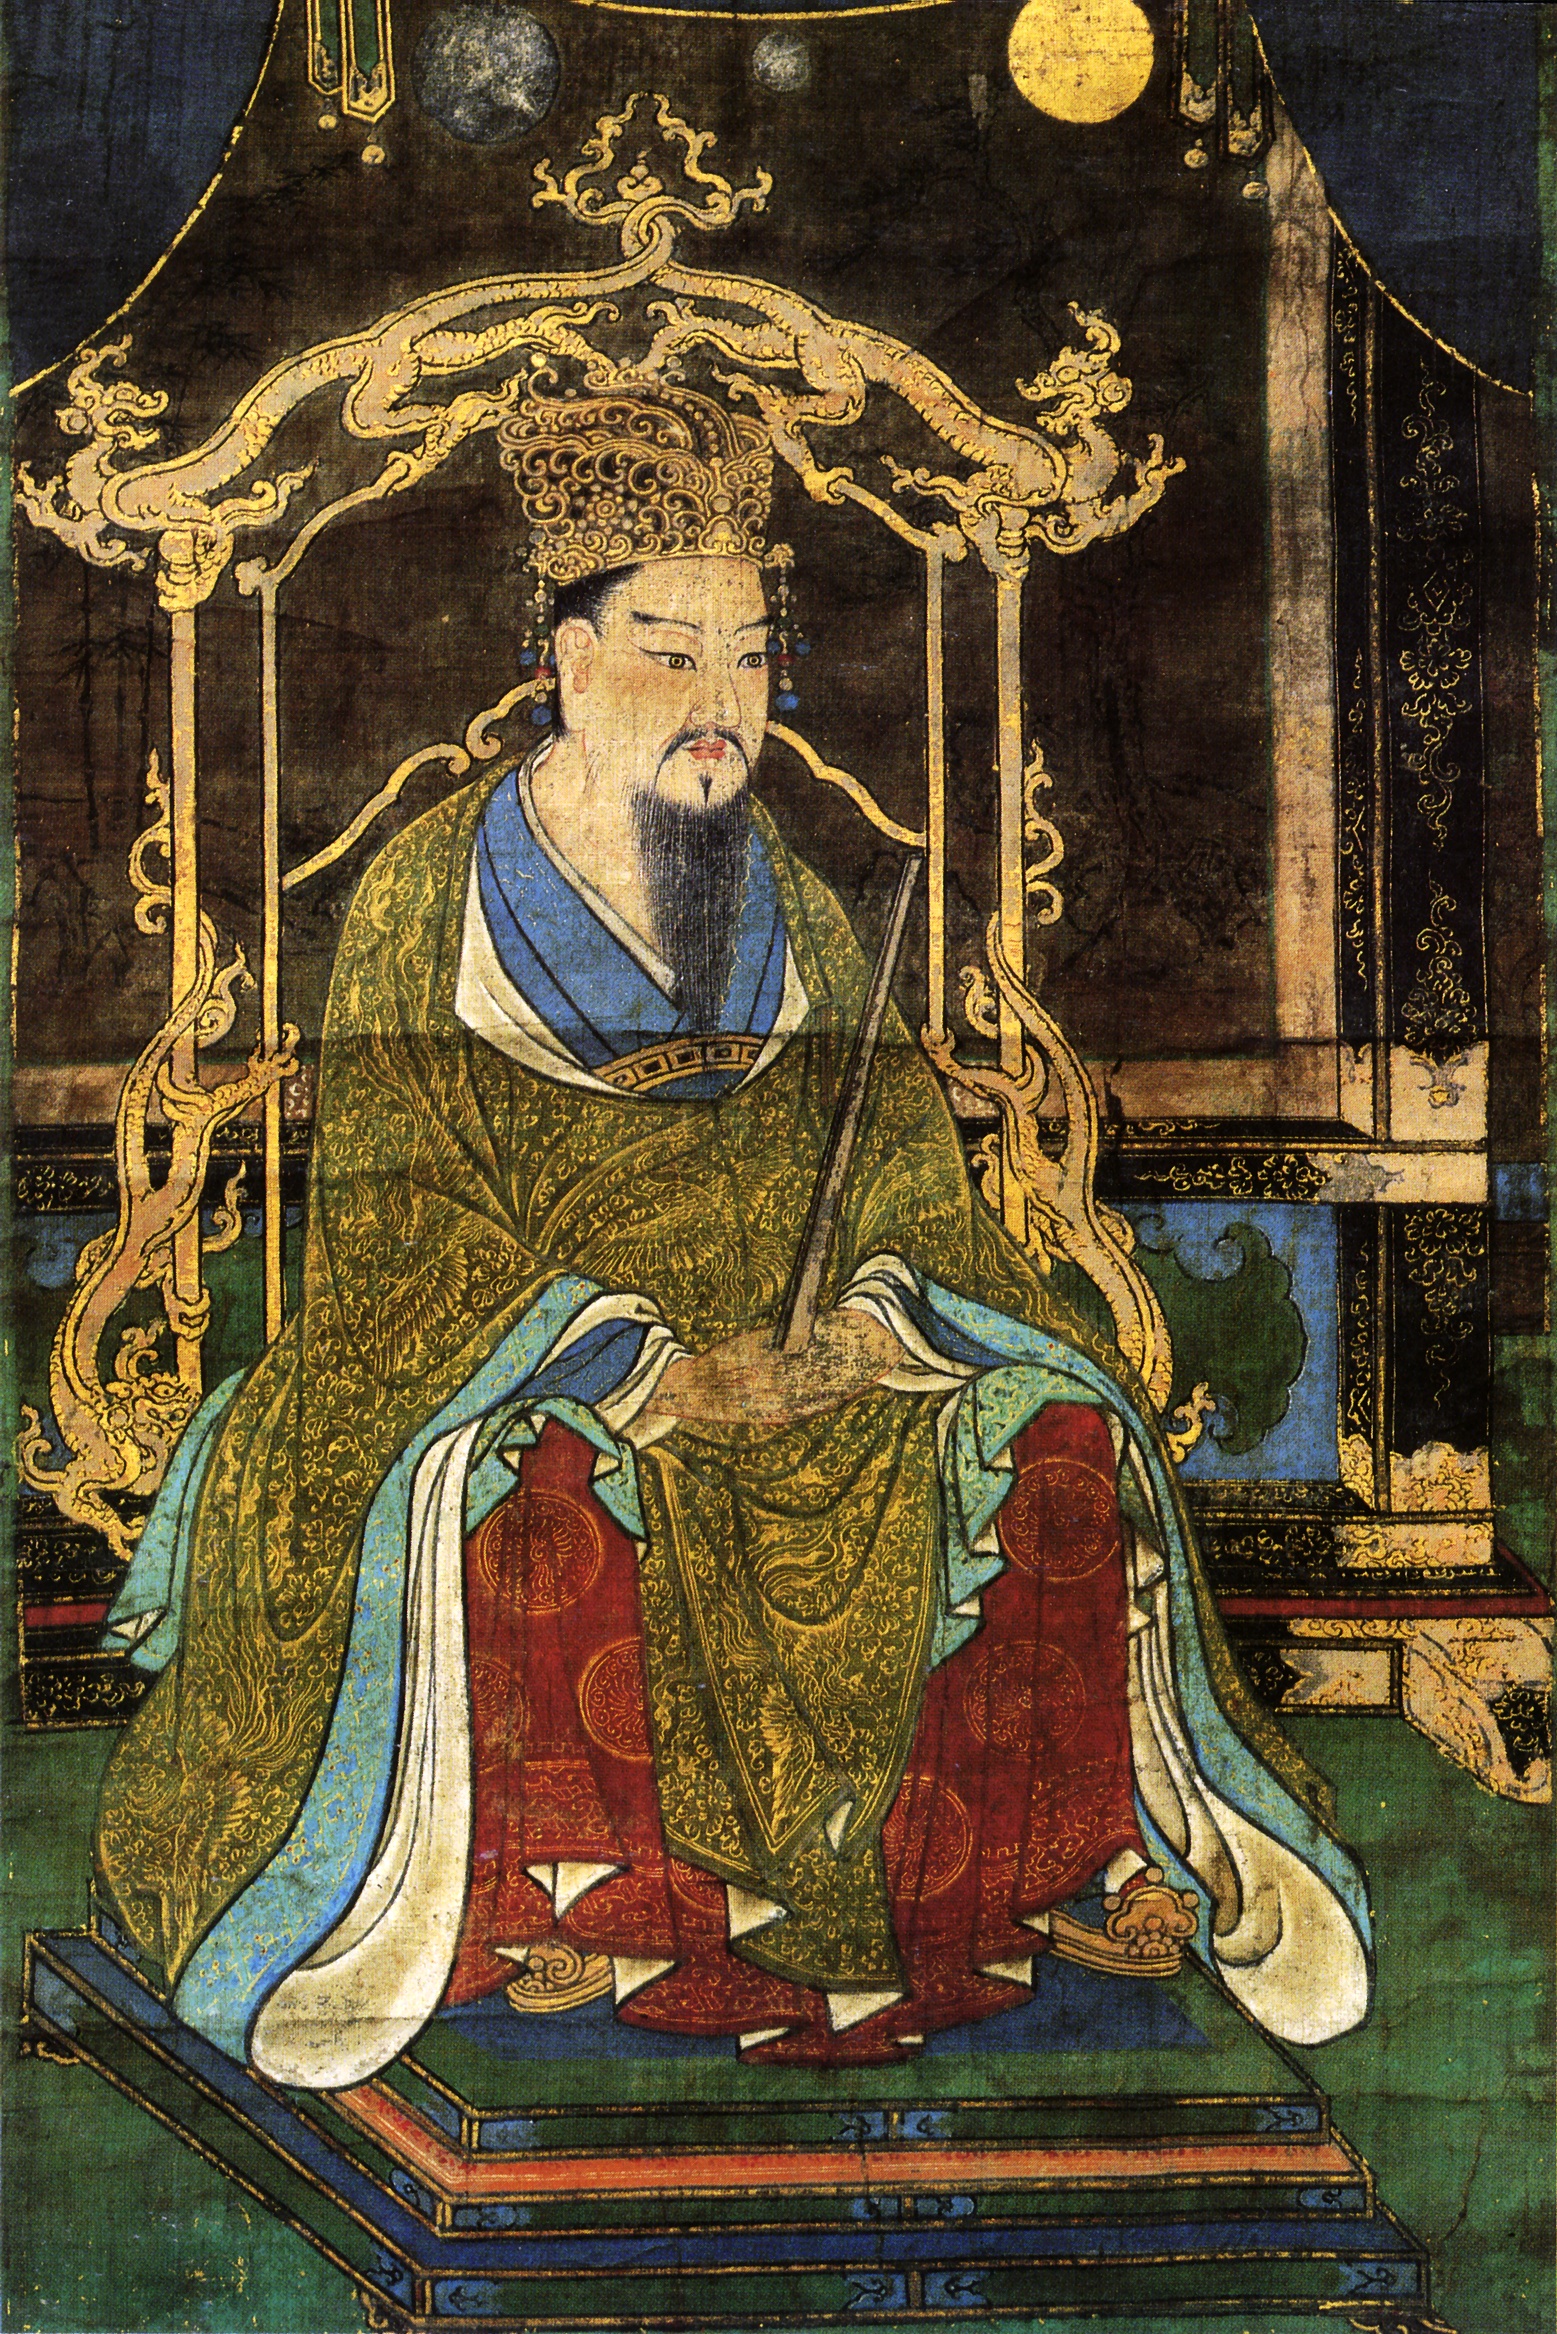 桓武天皇 - Wikipedia